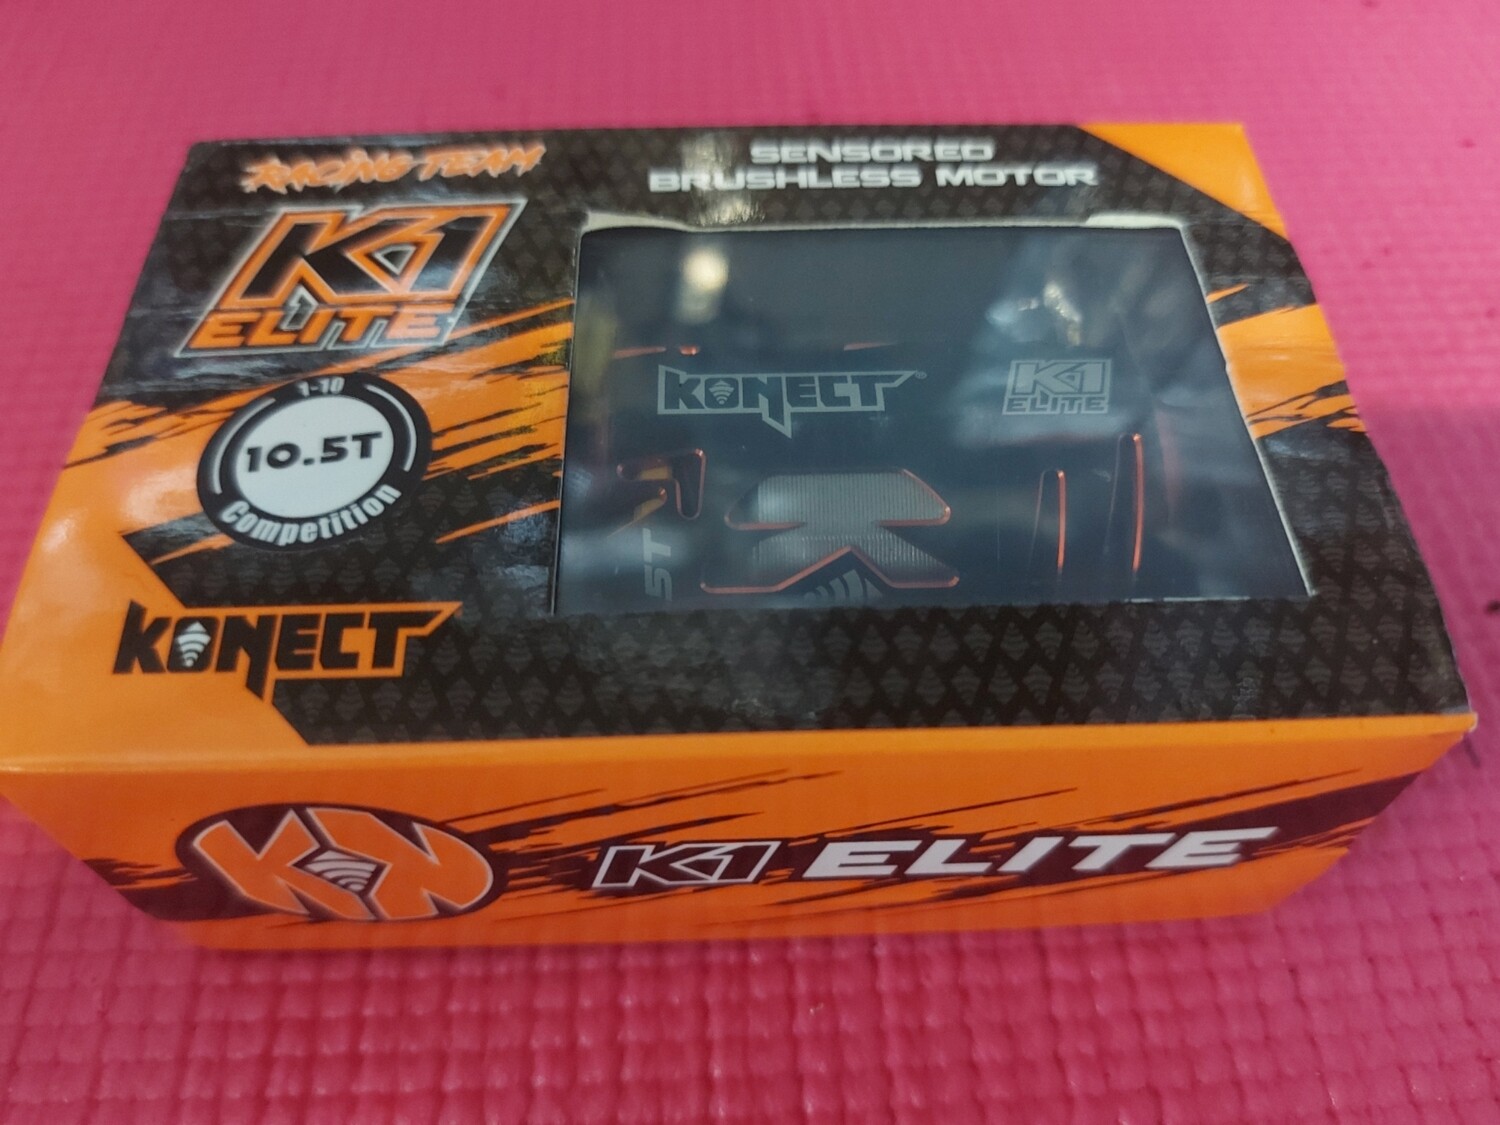 Konect K1 Elite 10.5T motor okkasie